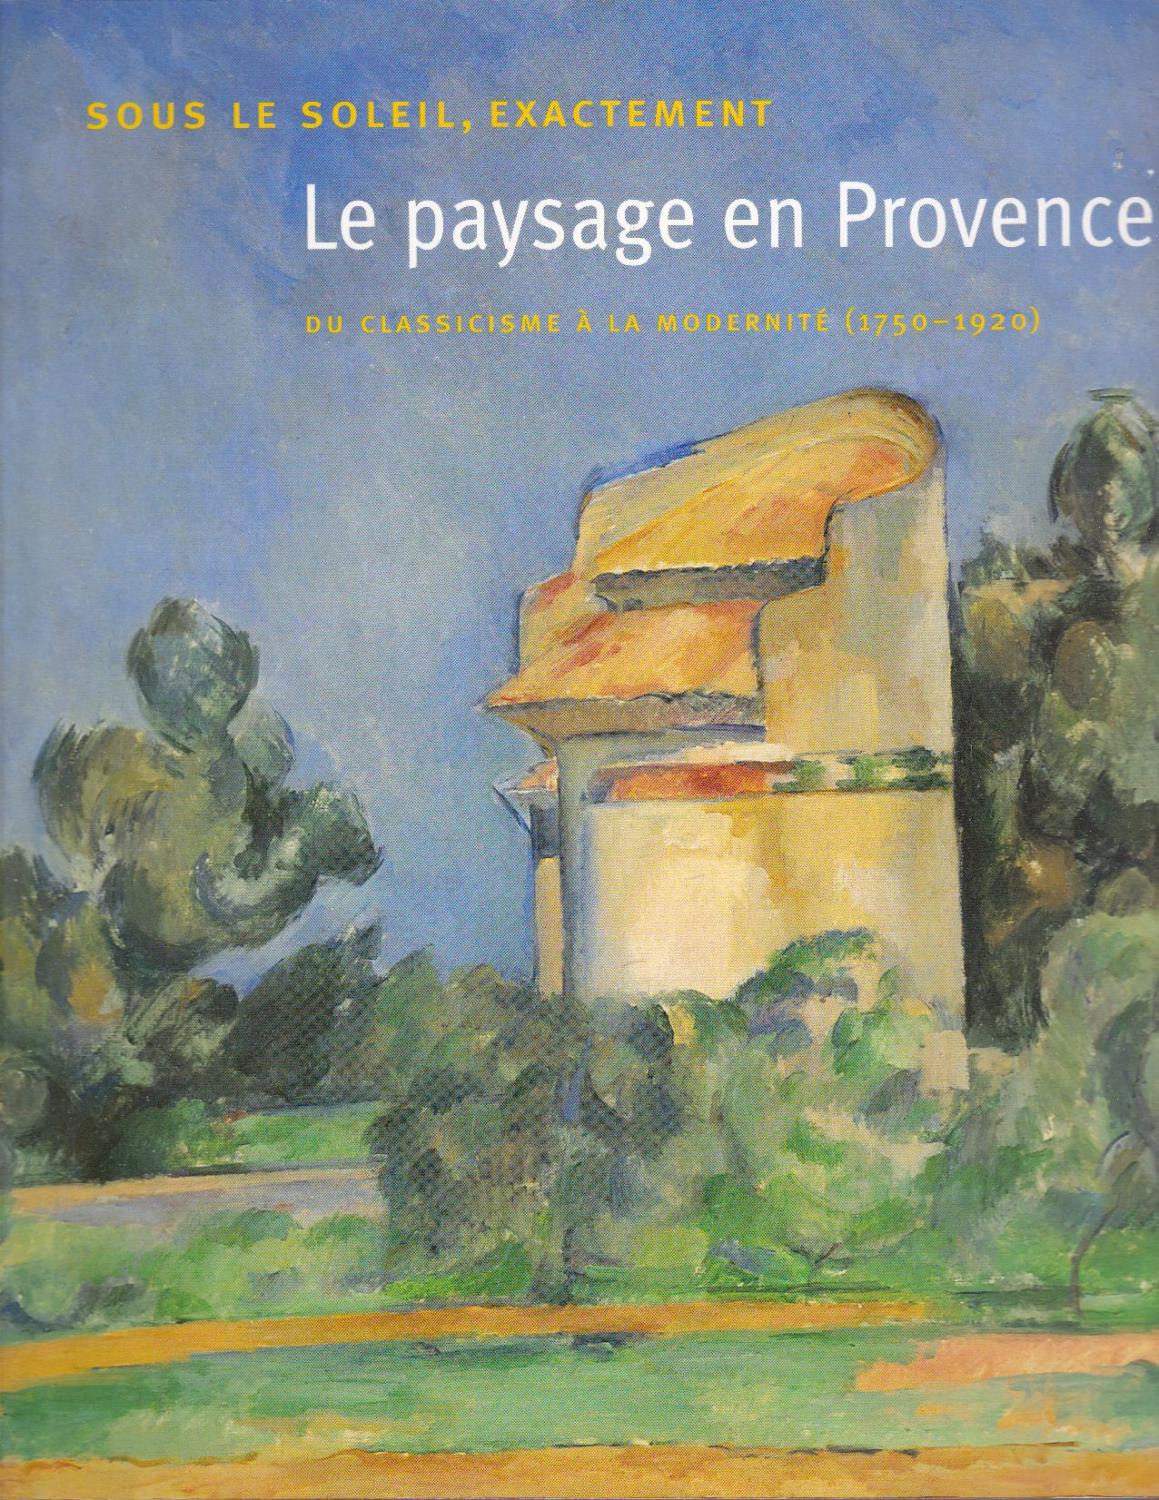 Sous le soleil, exactement. Le paysage en Provence: du classicisme à la modernité (1750-1920).